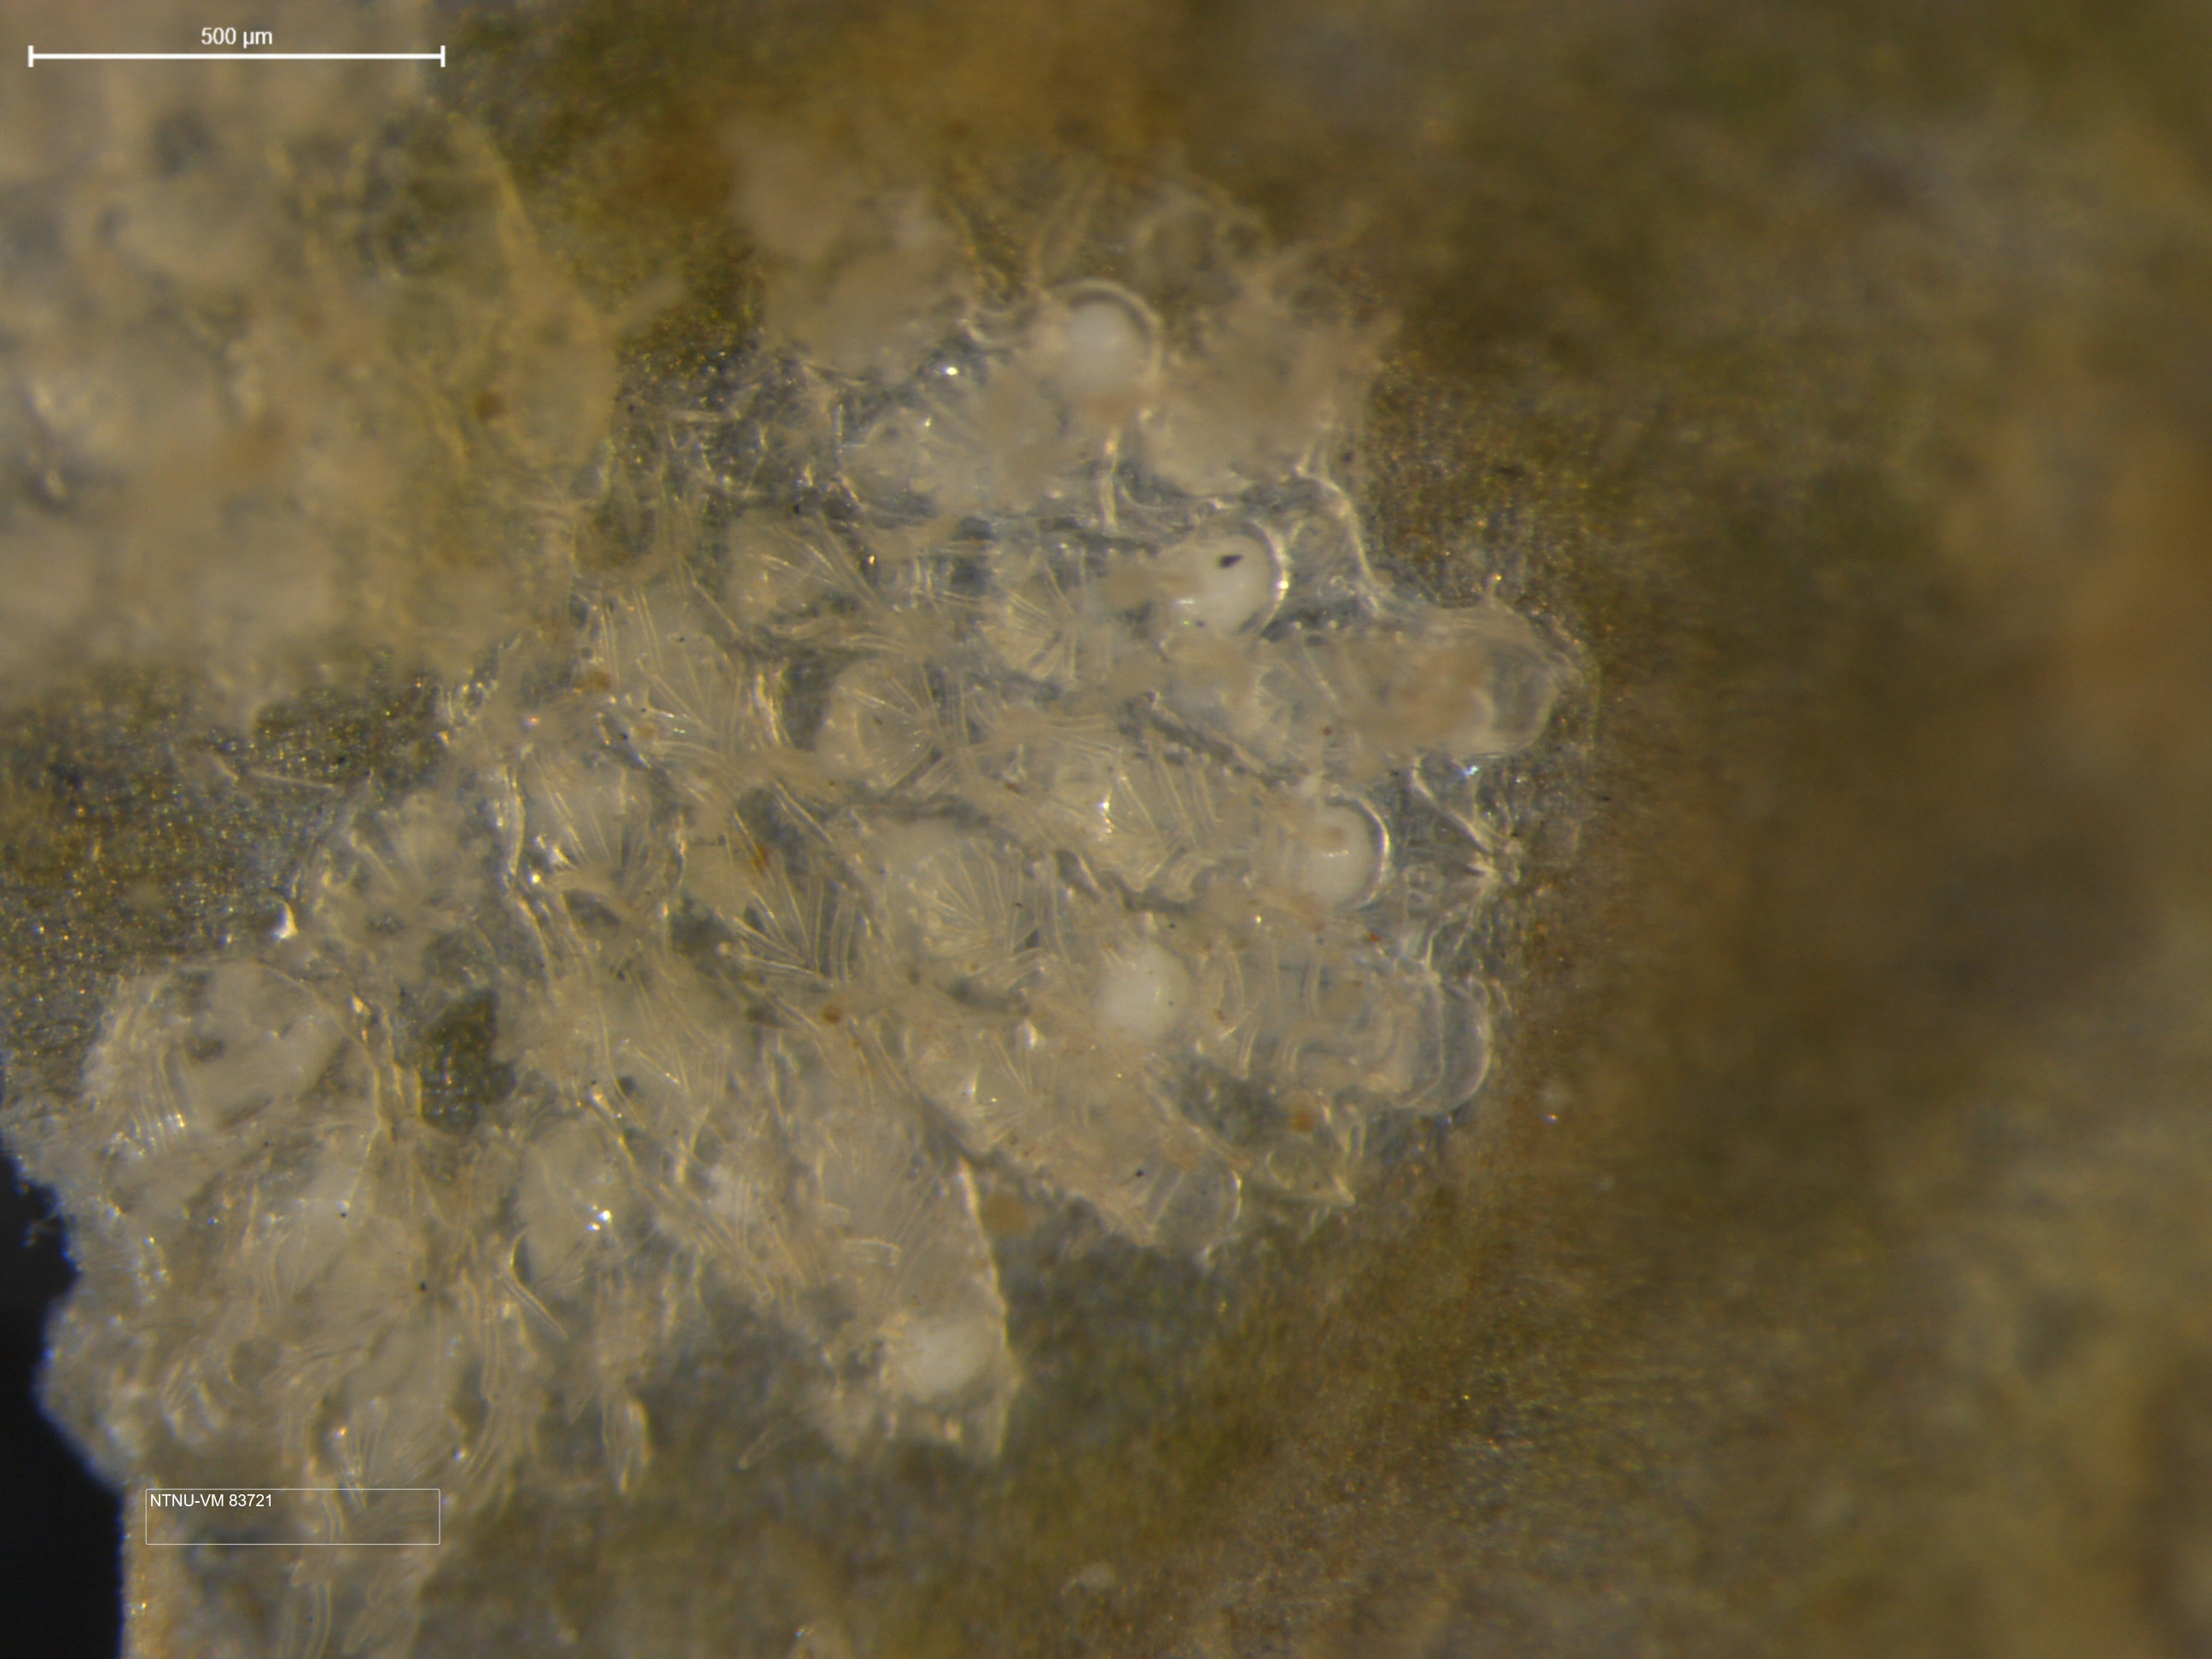 Mosdyr: Callopora craticula.